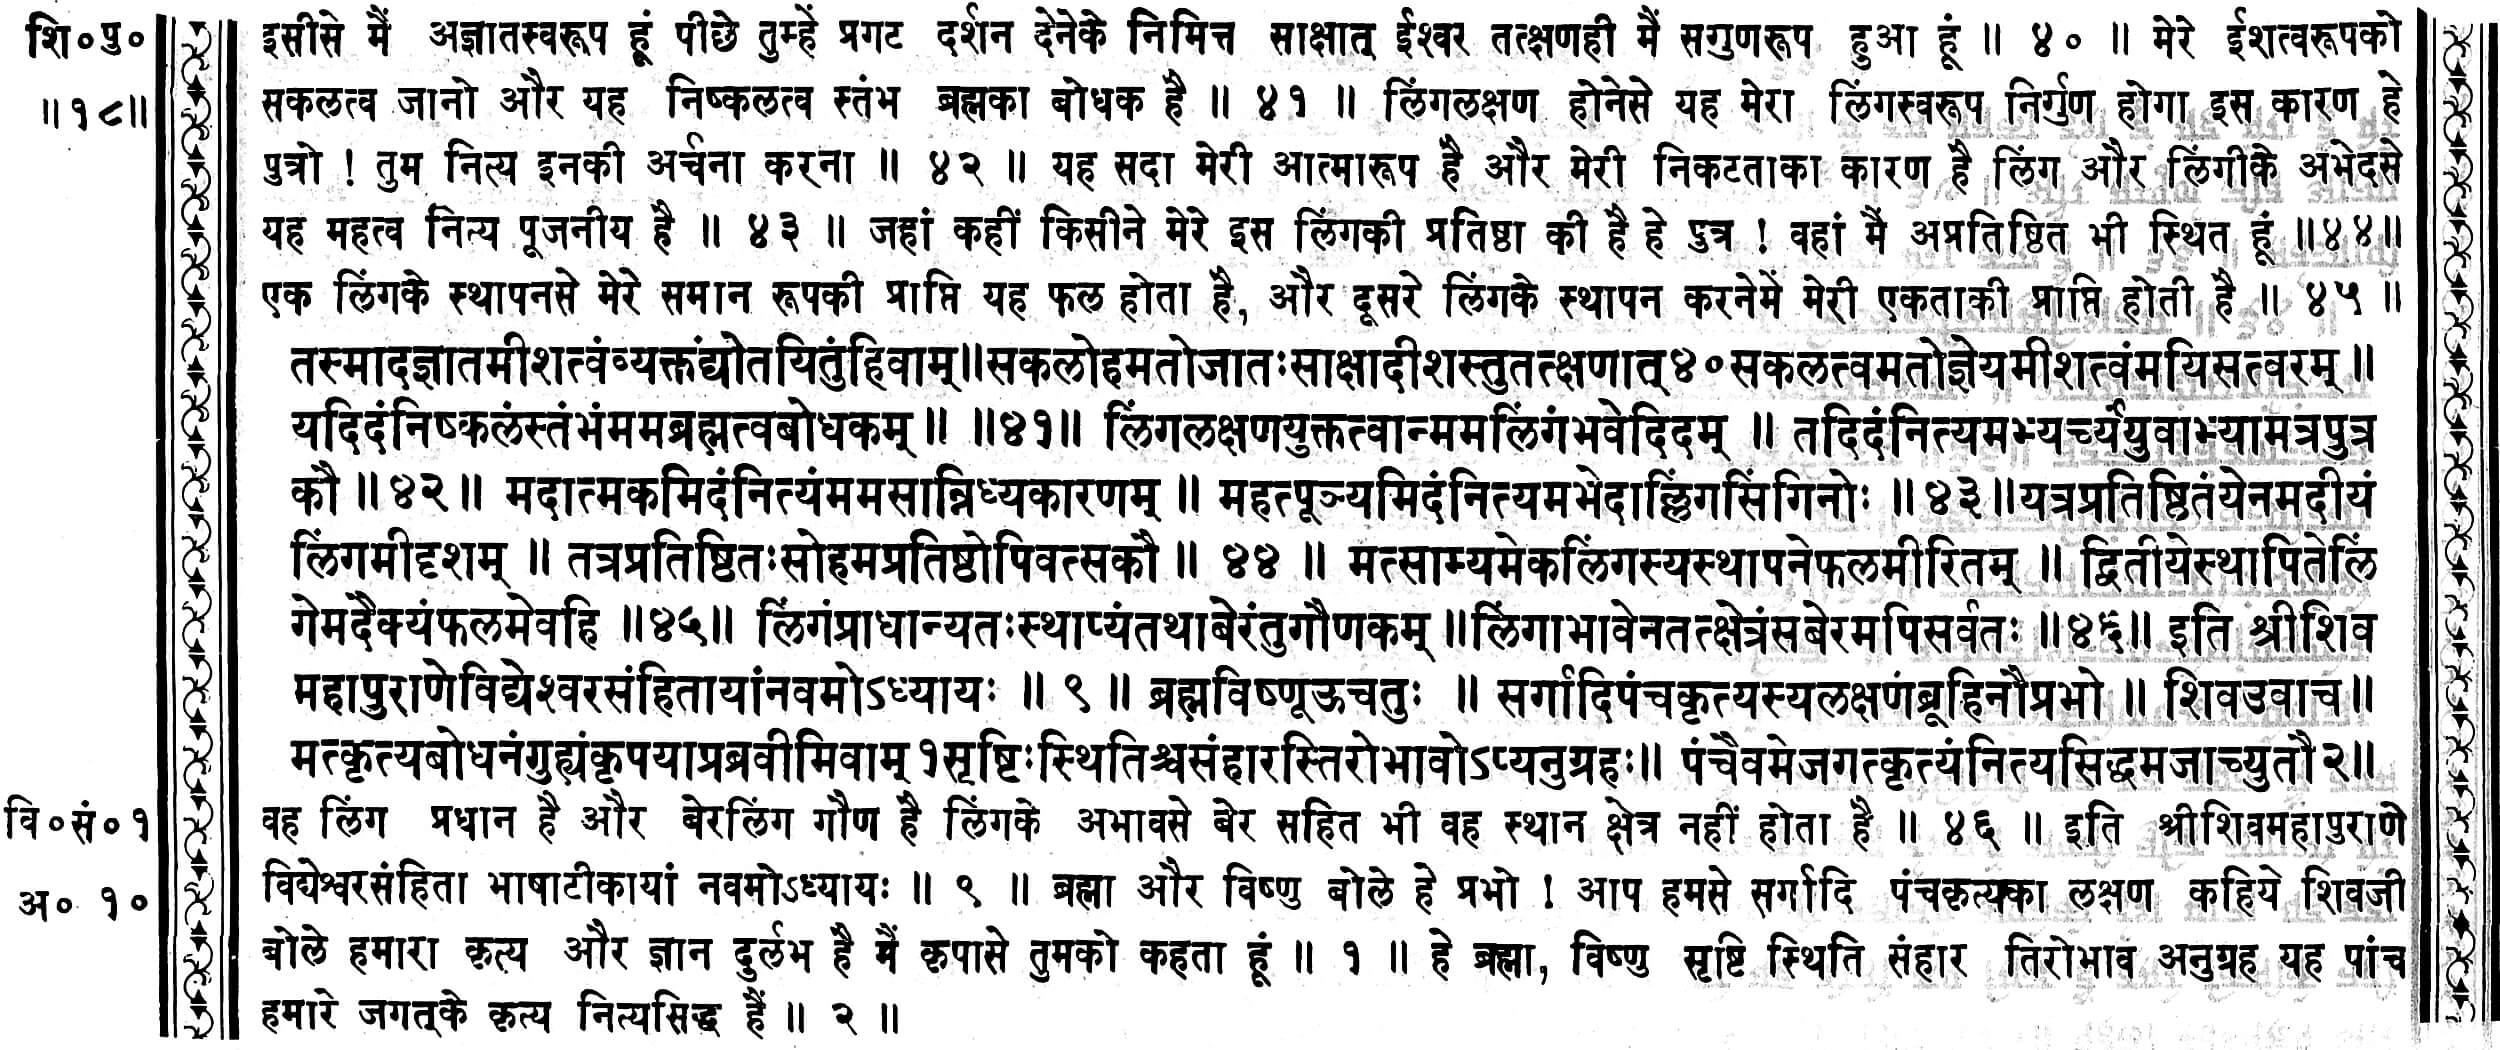 Shiv Maha Puran Vidhweshvar Samhita